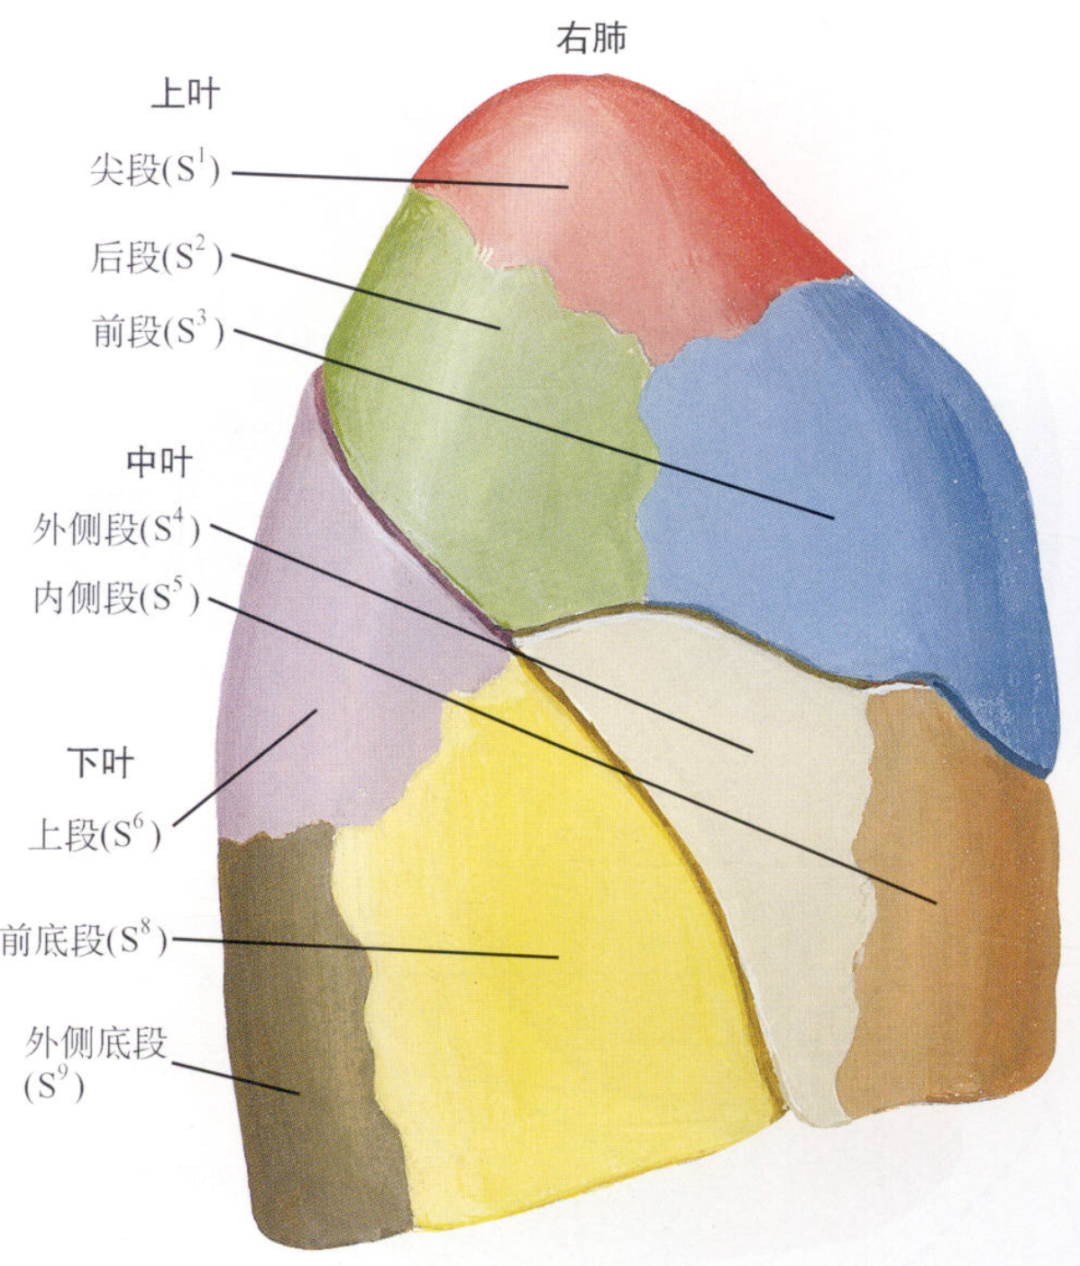 左肺的上叶和中叶融合成为上叶的上部( 固有上叶)和舌部( 舌叶),与下